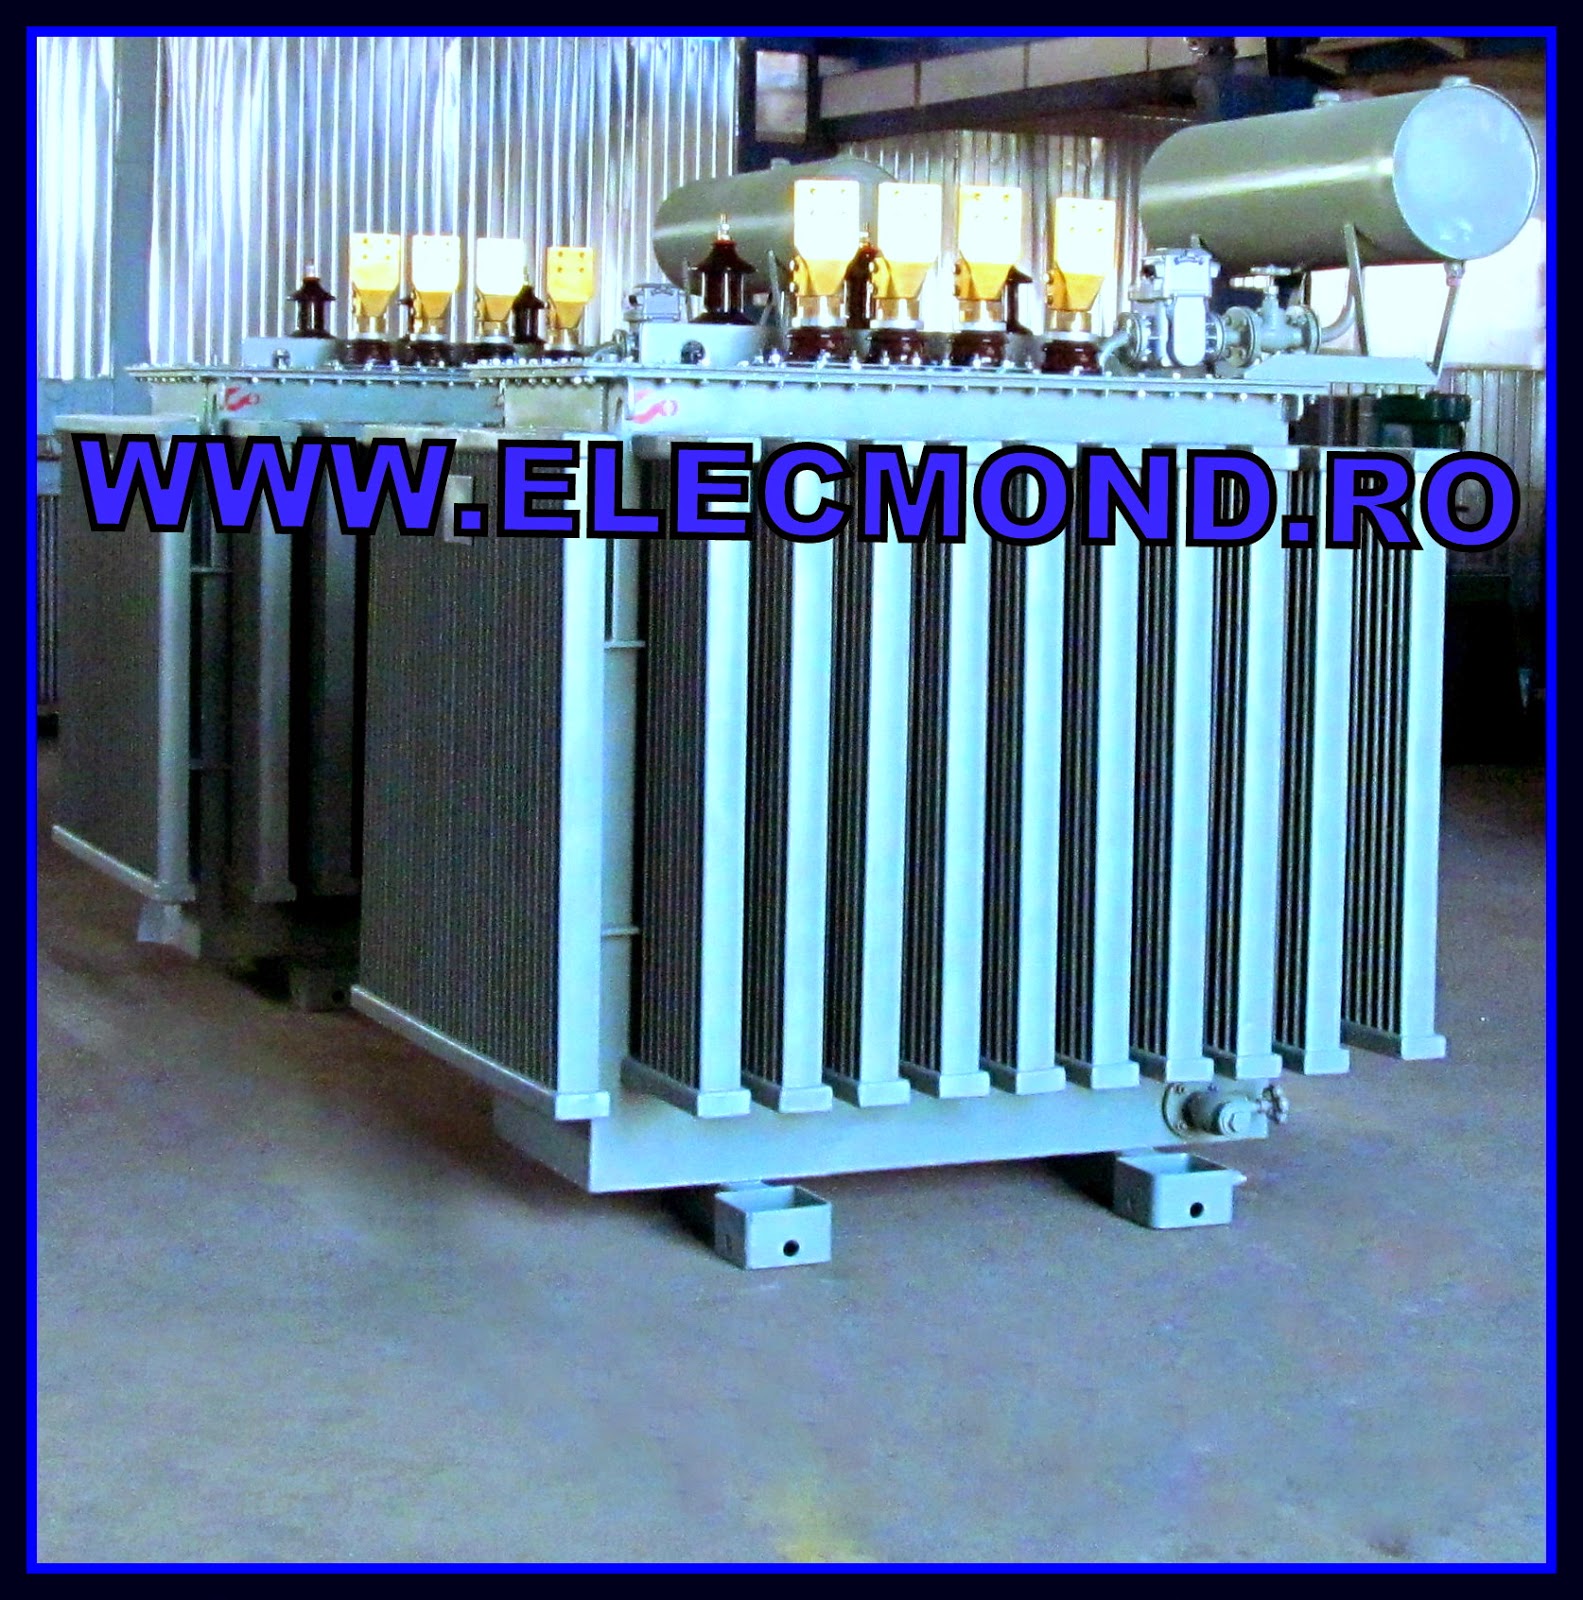 TRANSFORMATOARE 1600 kVA 6/0,4 kV ,TRANSFORMATOARE ELECTRICE, OFERTA TRANSFORMATOARE, PRET TRANSFORMATOR , TRAFO  , OFERTA TRANSFORMATOARE ,transformatoare medie tensiune, TRANSFORMATOARE, TRANSFORMATOR 1600, elecmond